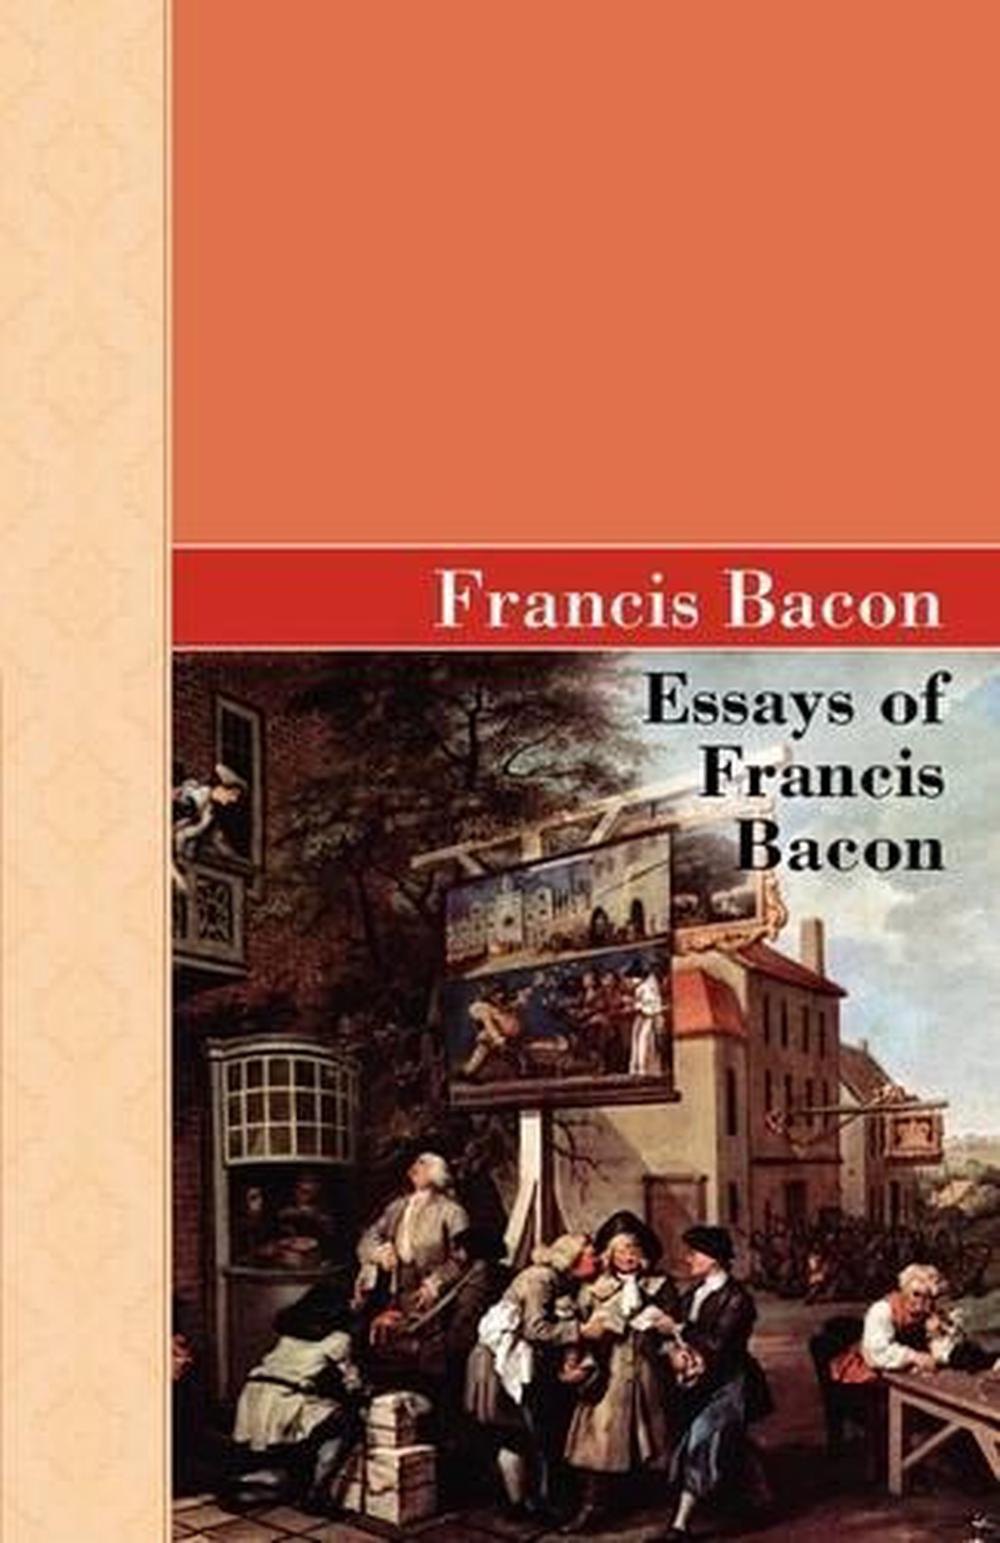 francis bacon family essay